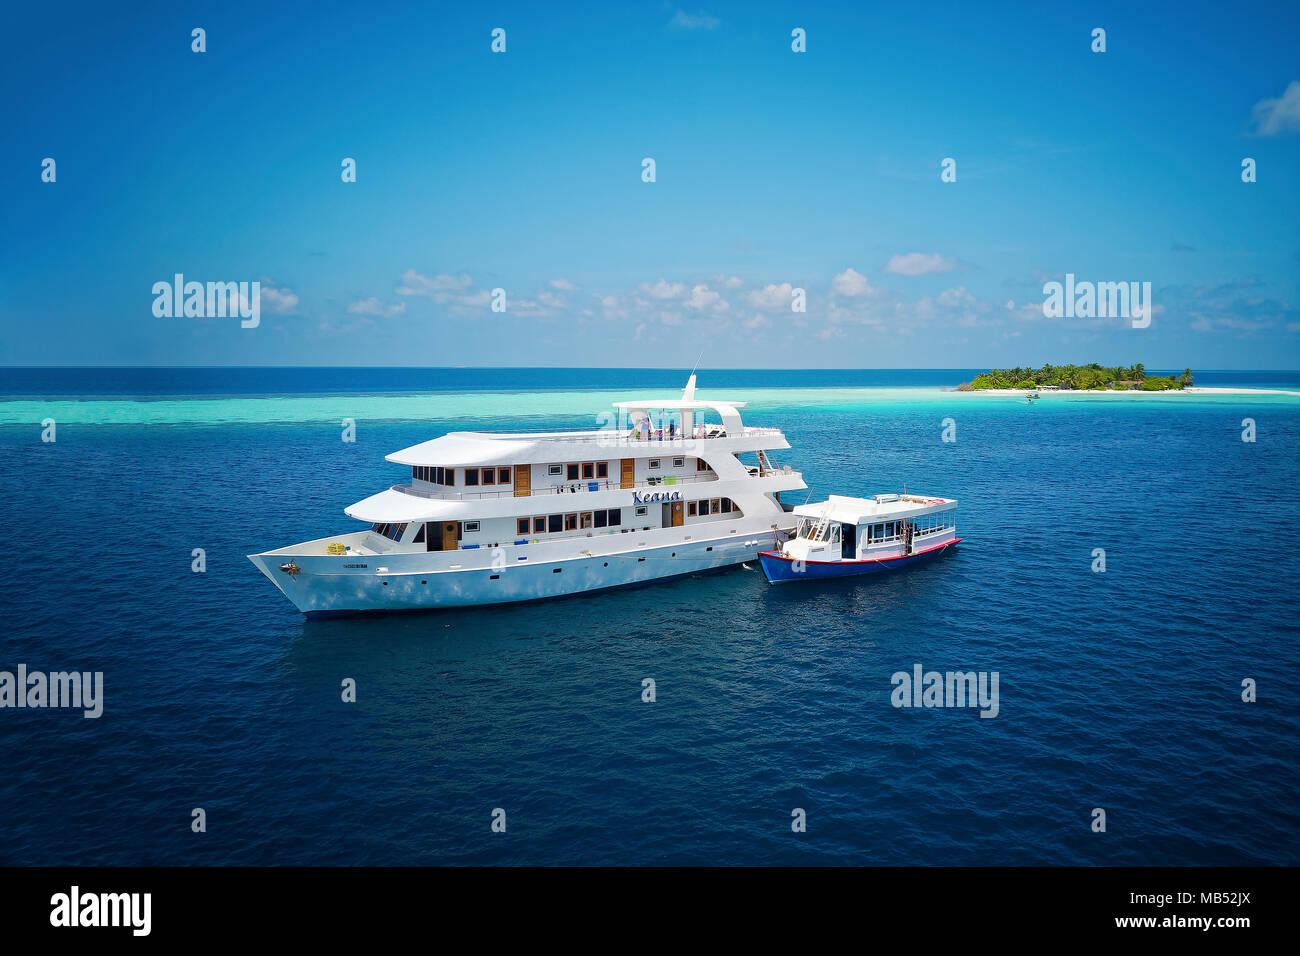 Safari de buceo barco MS Keana dhoni de buceo esté anclado en una deshabitada isla con palmeras, Ari Atoll, Maldivas, Océano Índico Foto de stock